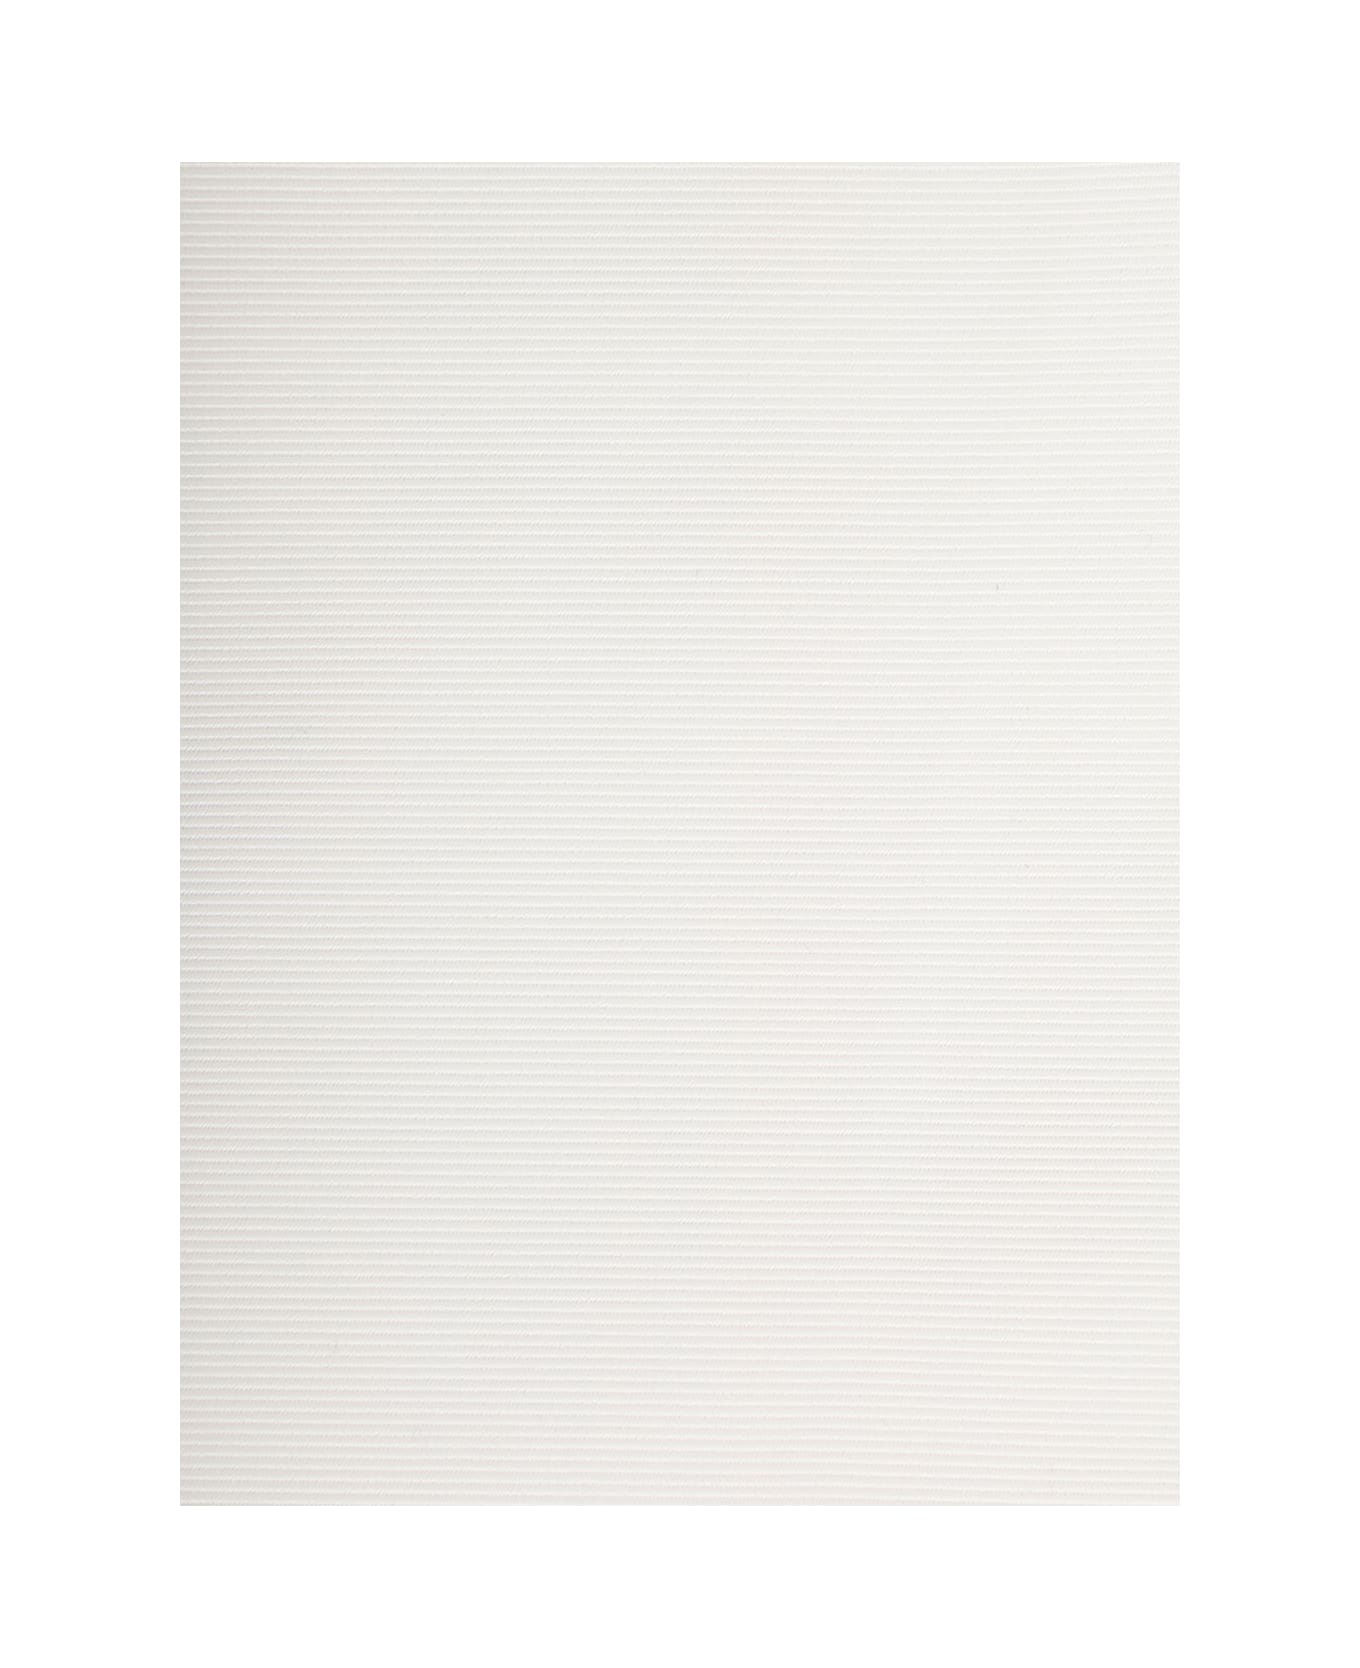 Sara Roka White Monochrome Sash In Cotton Blend Woman - White